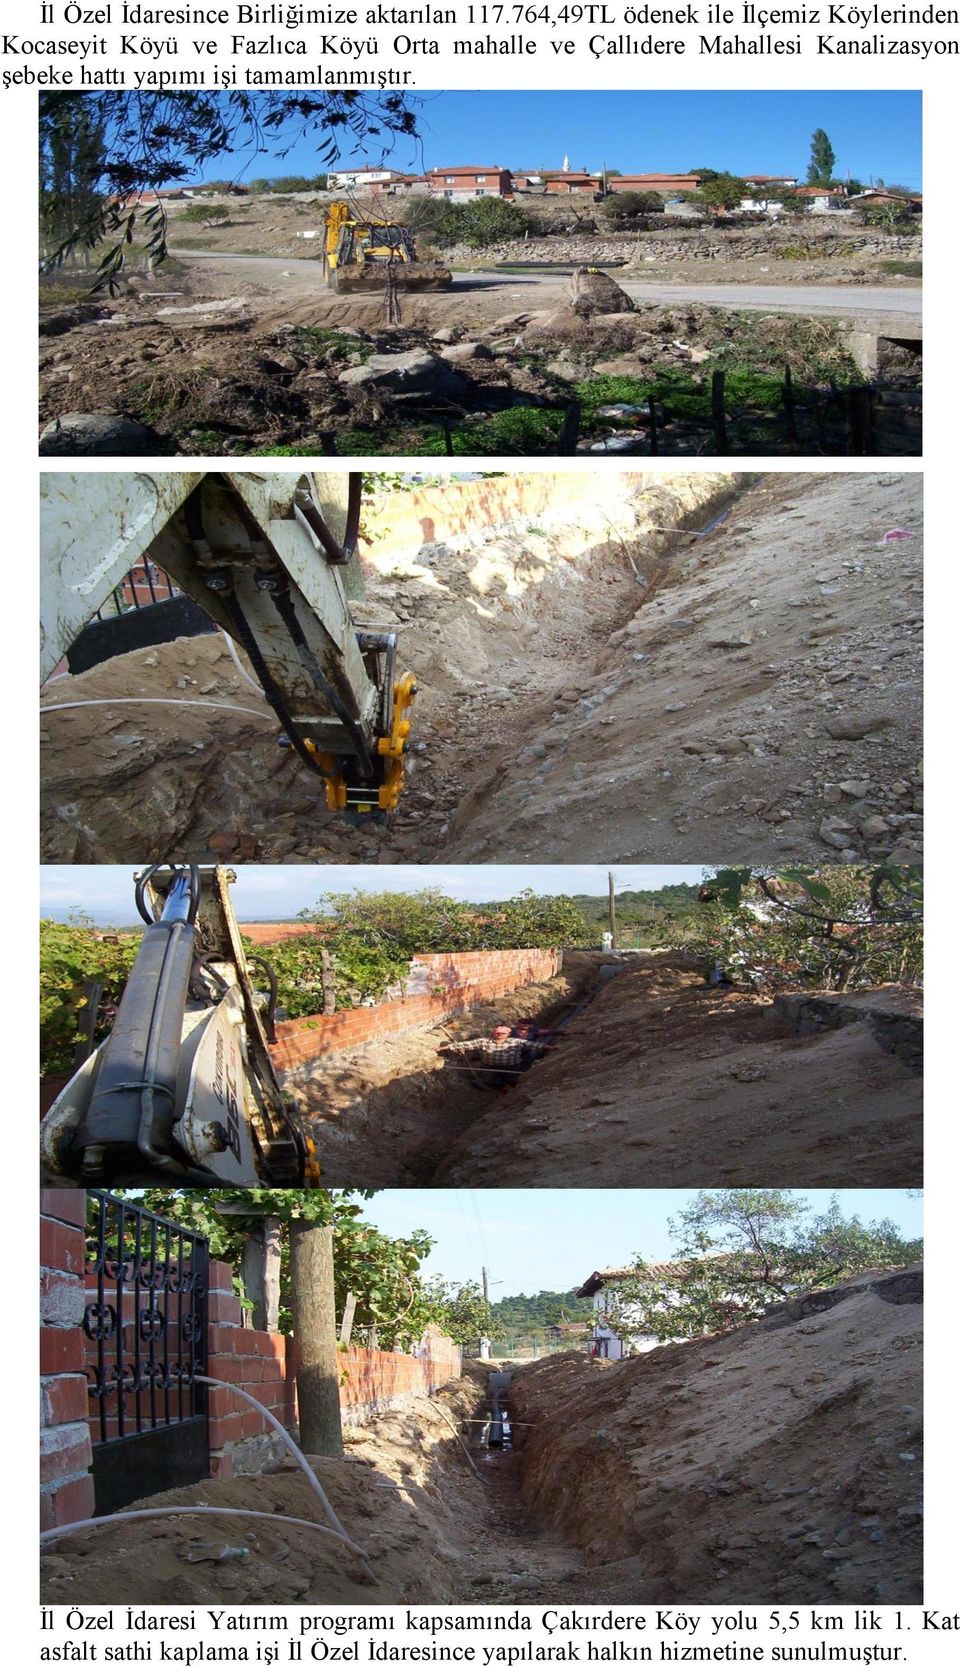 Çallıdere Mahallesi Kanalizasyon şebeke hattı yapımı işi tamamlanmıştır.